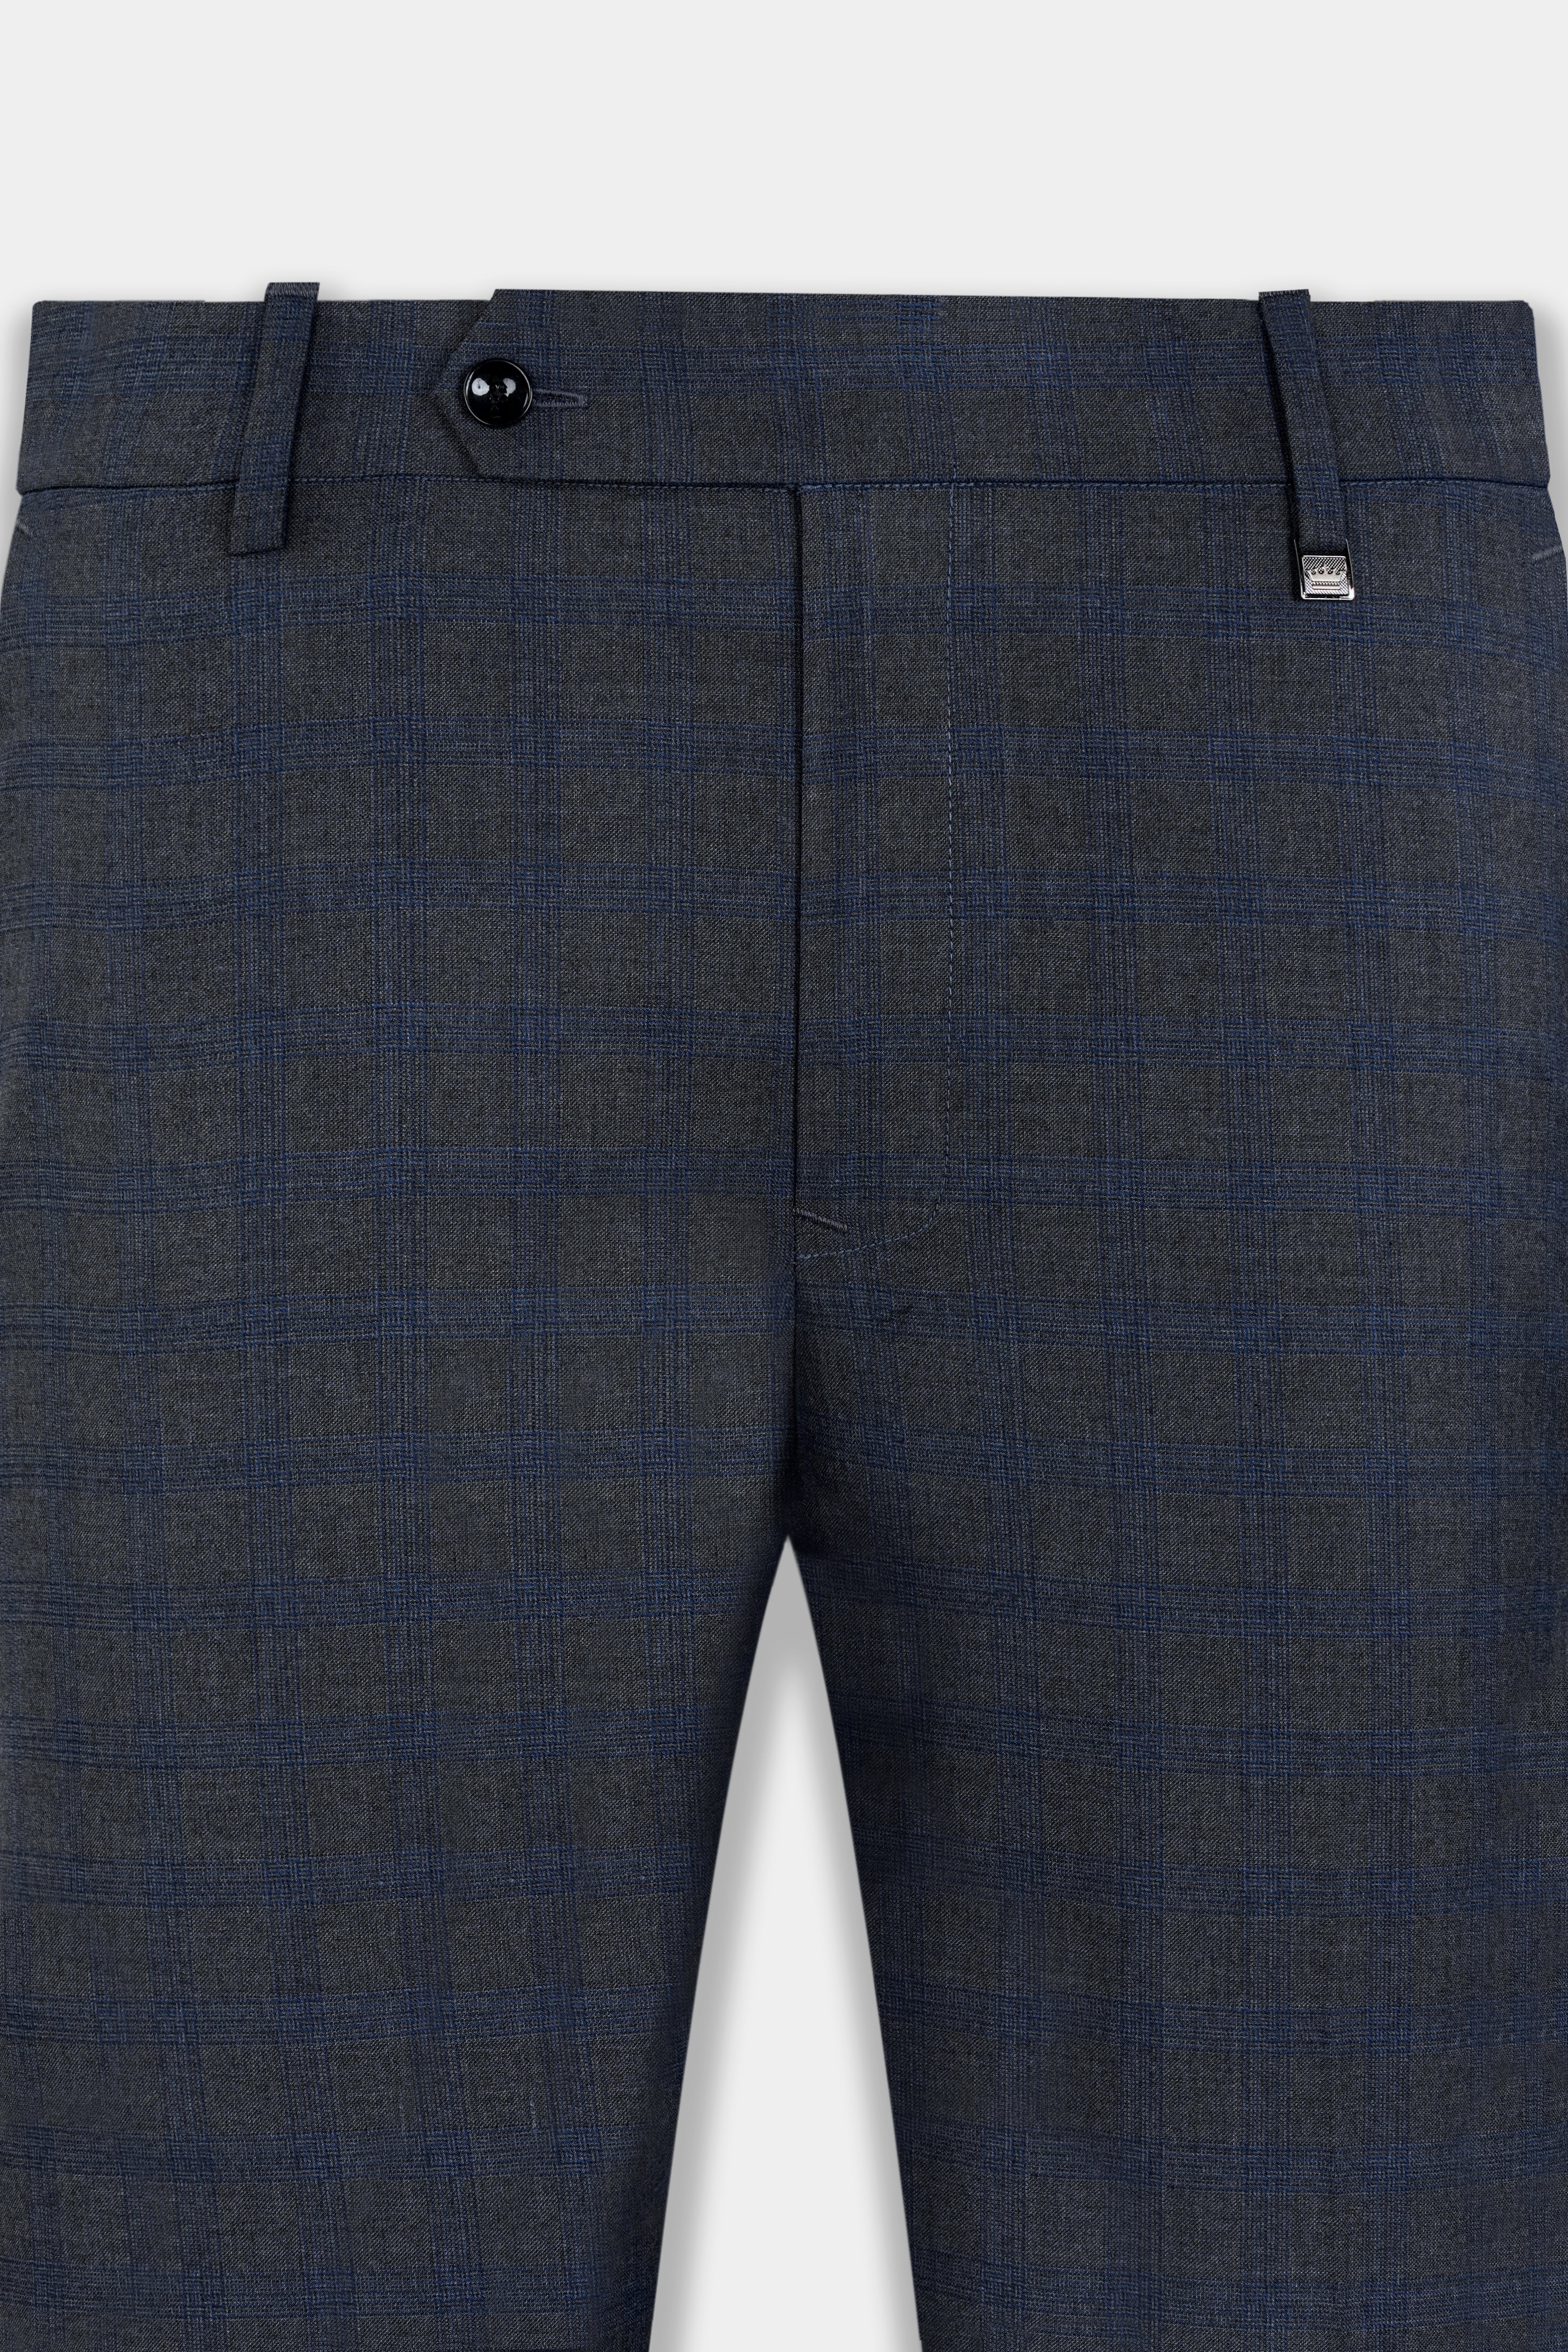 One-pleat trousers in pure cashmere gabardine | GIORGIO ARMANI Man